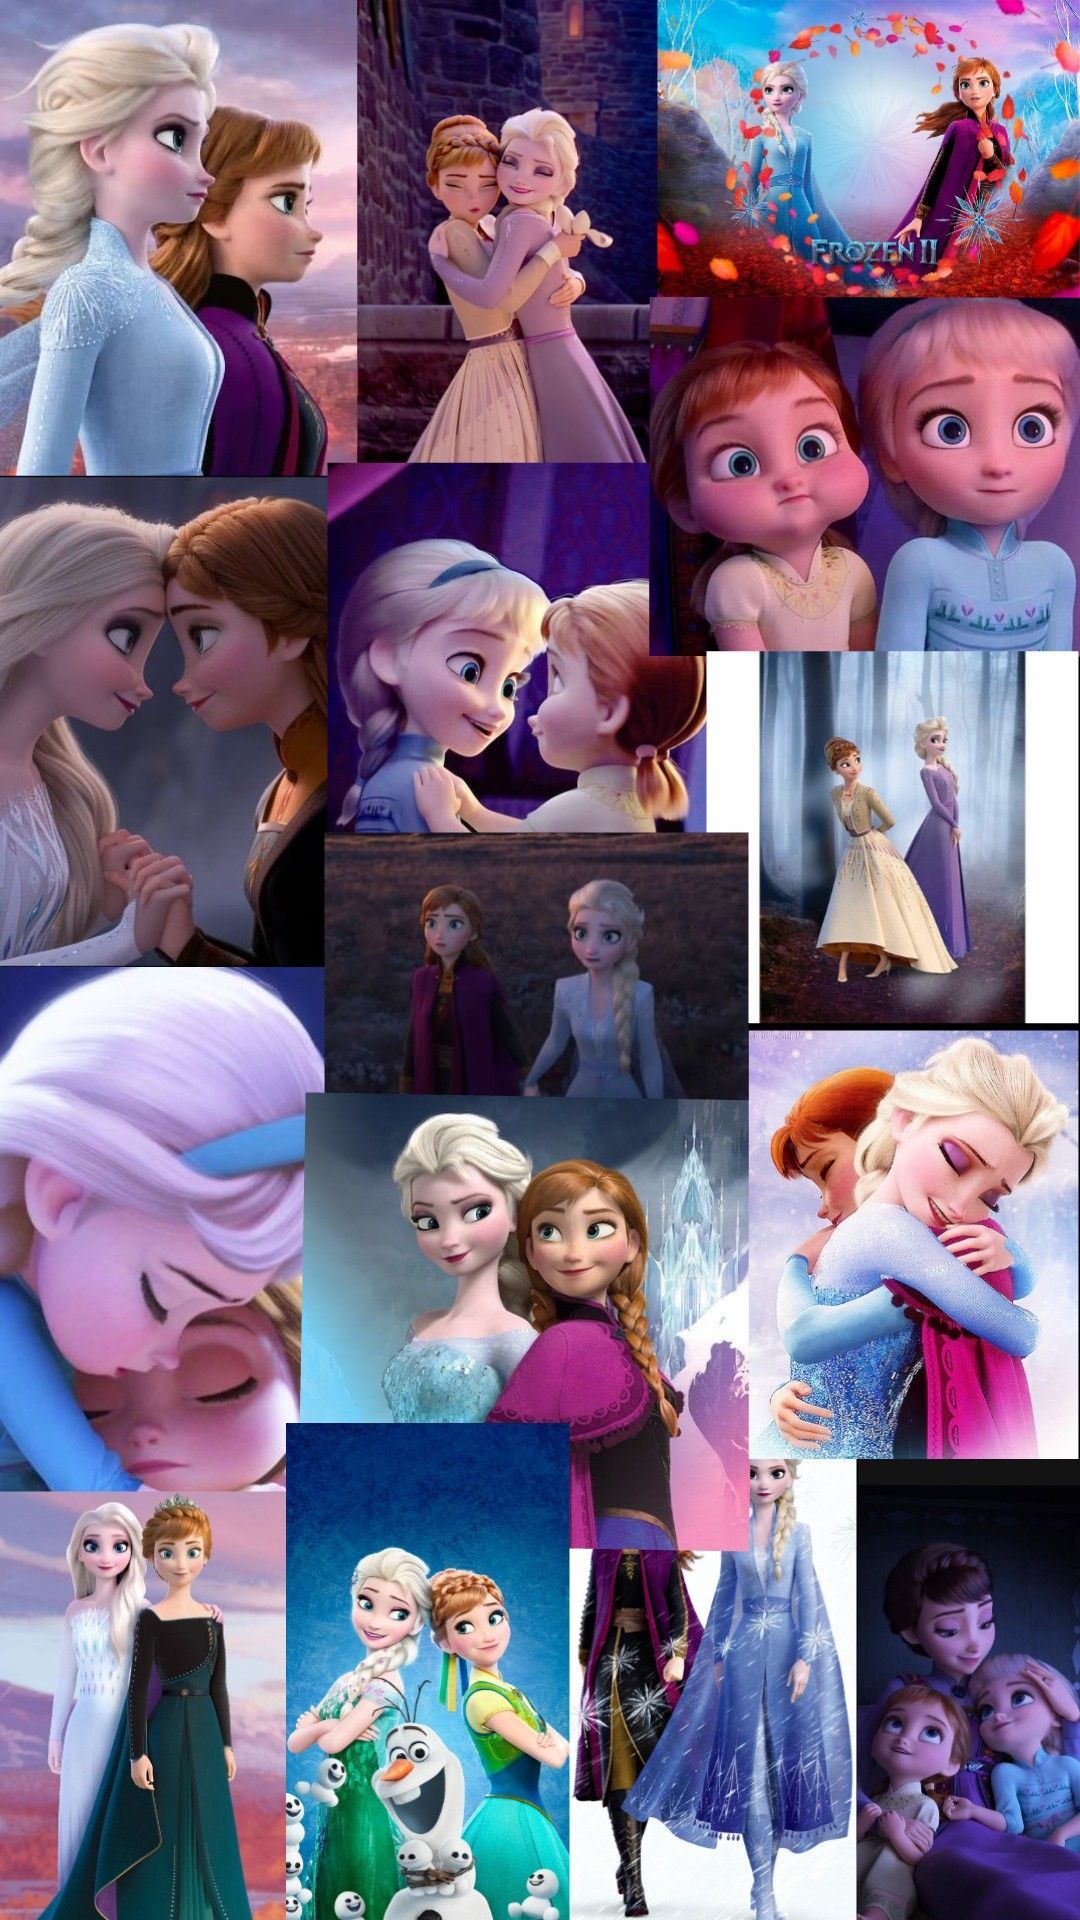 Elsa and Anna wallpaper. Disney princess wallpaper, Disney collage, Wallpaper iphone disney princess